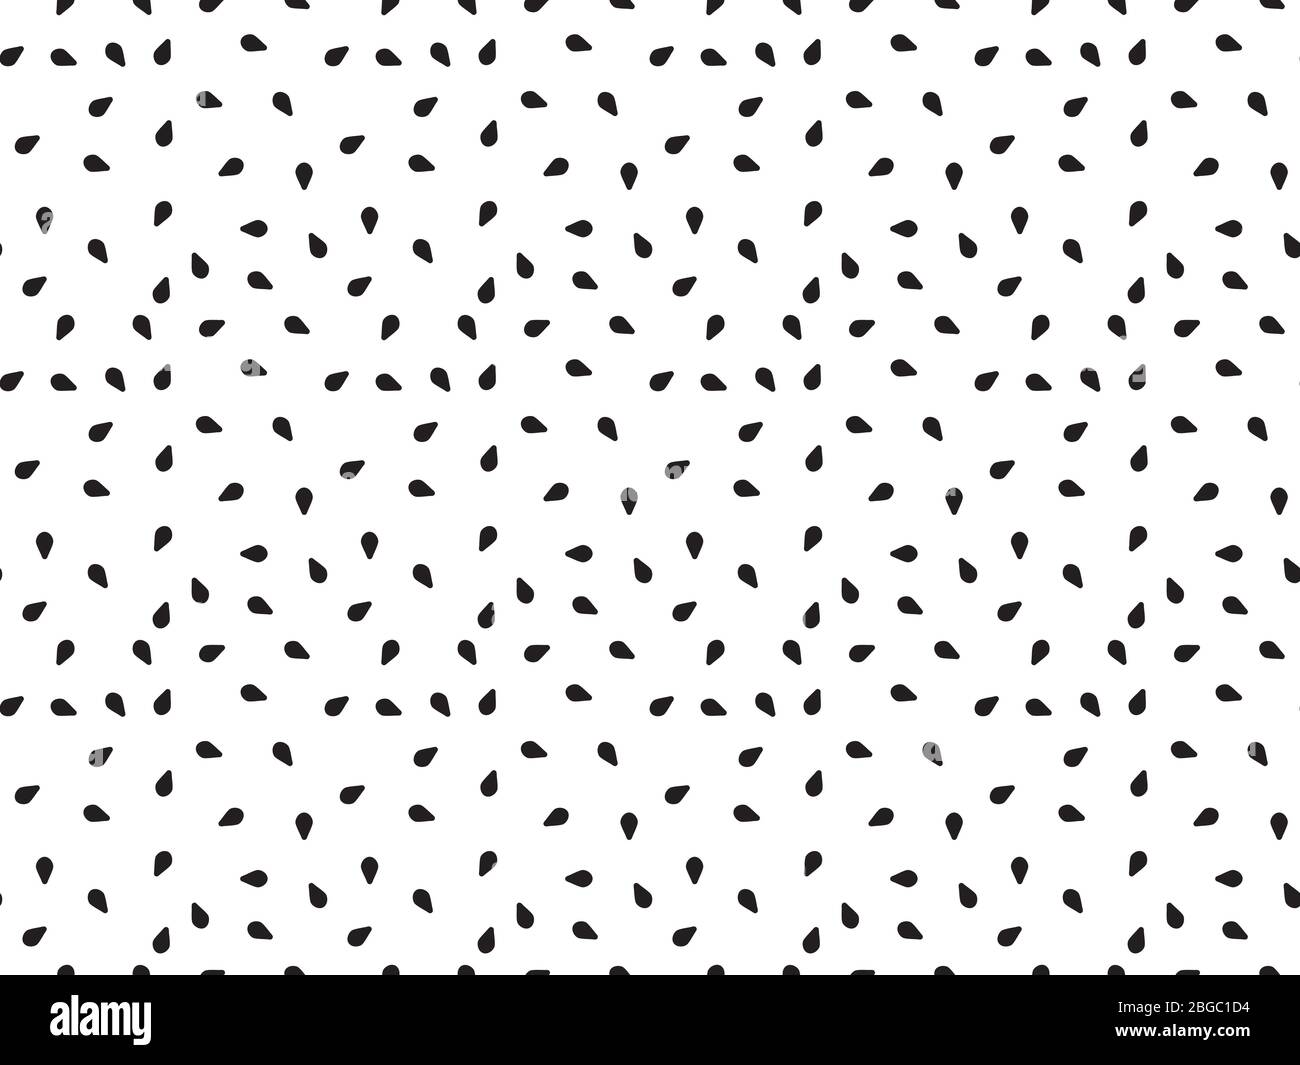 Nahtlose abstrakte Tapete von schwarzen Sesam-Samen-Illustration in sich wiederholenden Muster auf weißem Hintergrund Stock Vektor